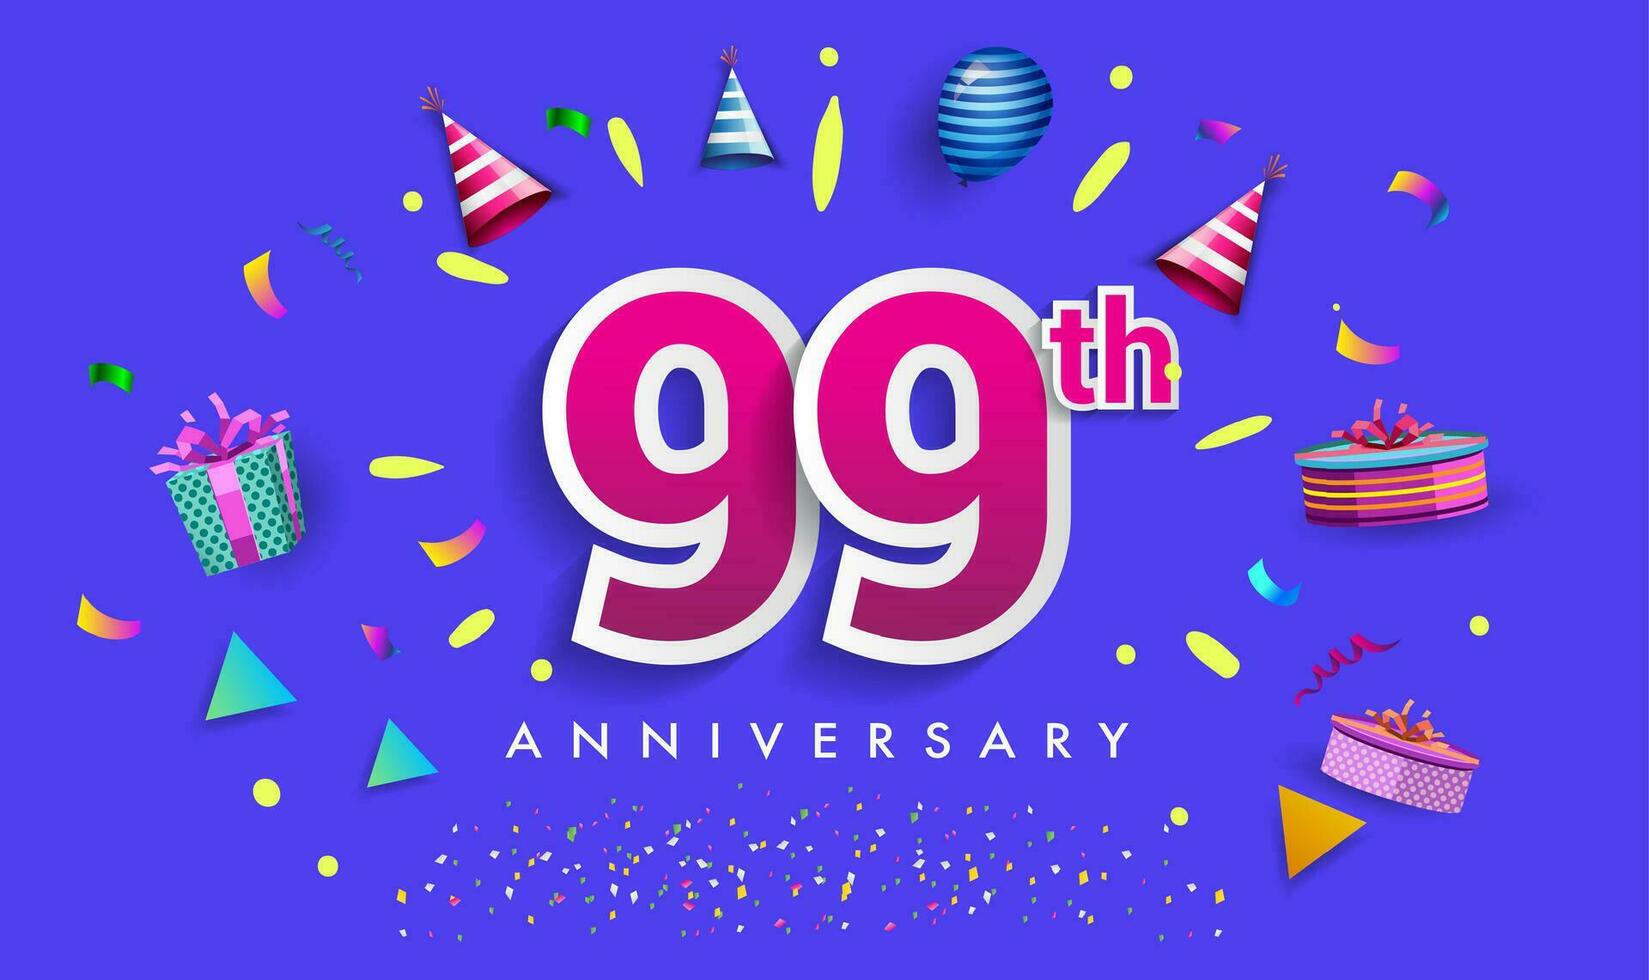 99: e år årsdag firande design, med gåva låda och ballonger, band, färgrik vektor mall element för din födelsedag fira fest.